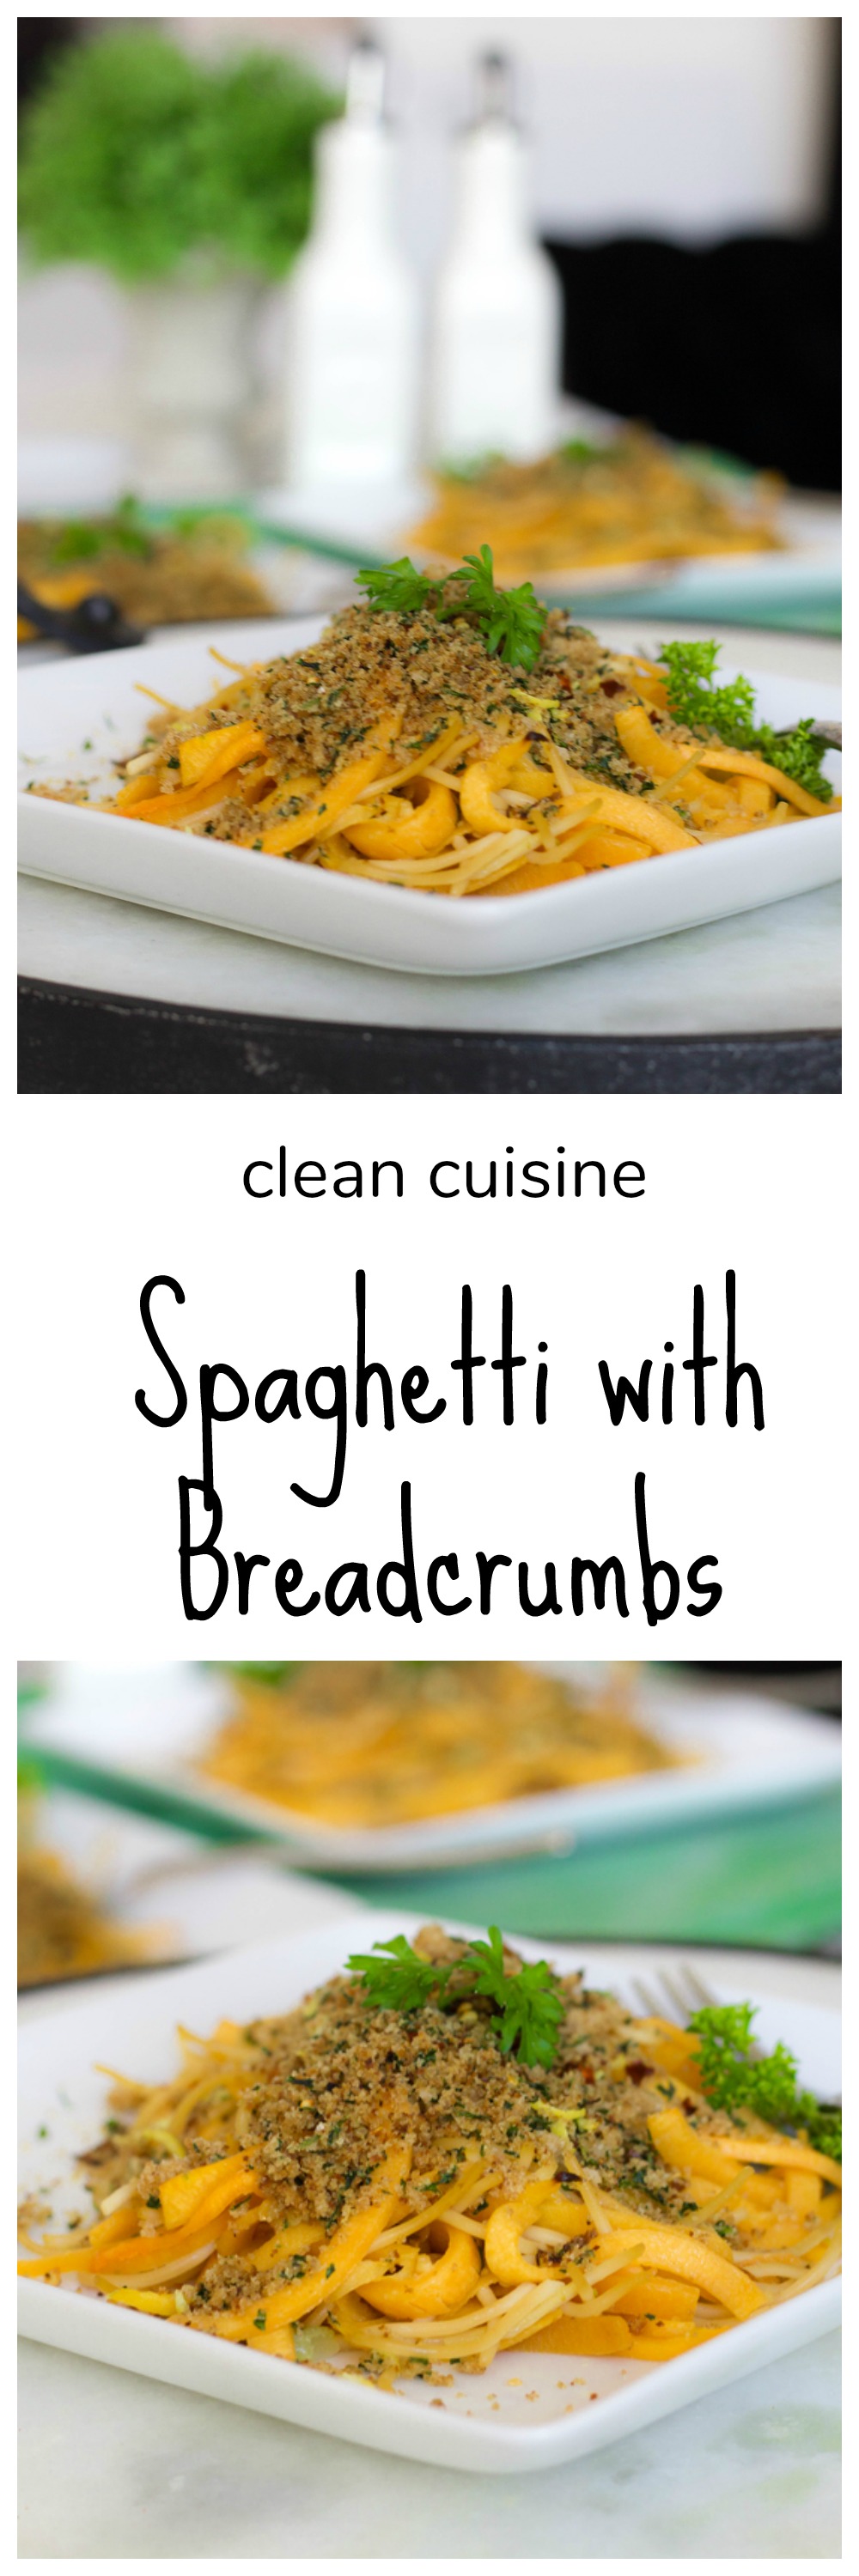 Spaghetti with Breadcrumbs 2